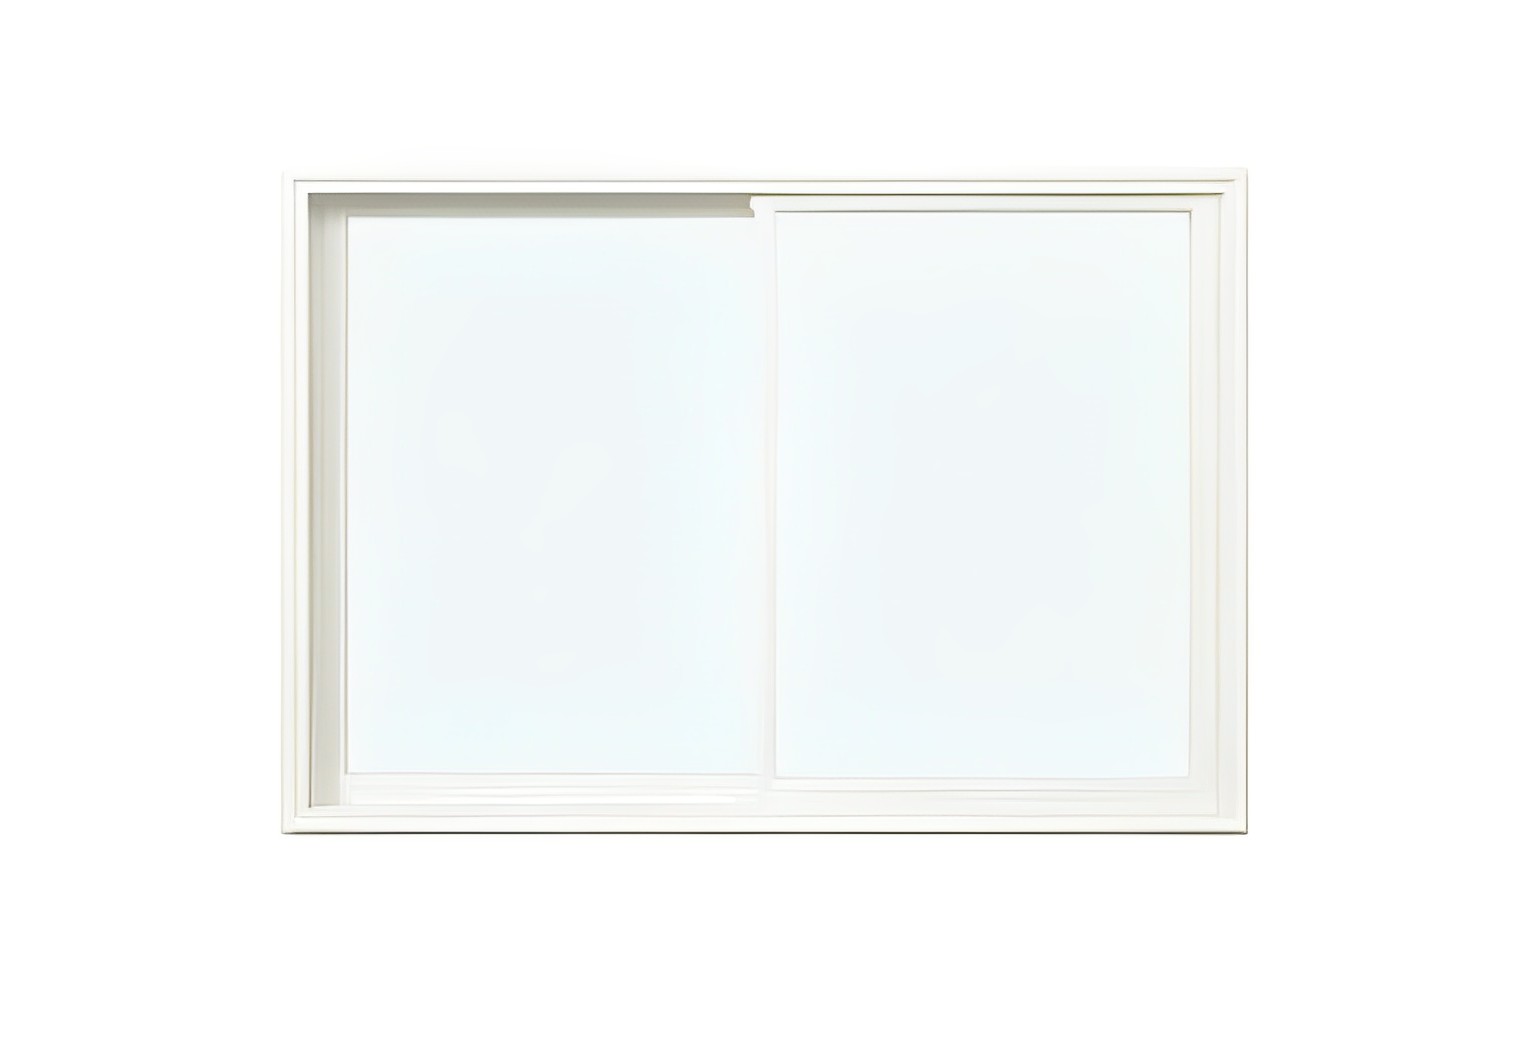 YKKAP 樹脂窓 APW330 引違い窓 W1600×H900